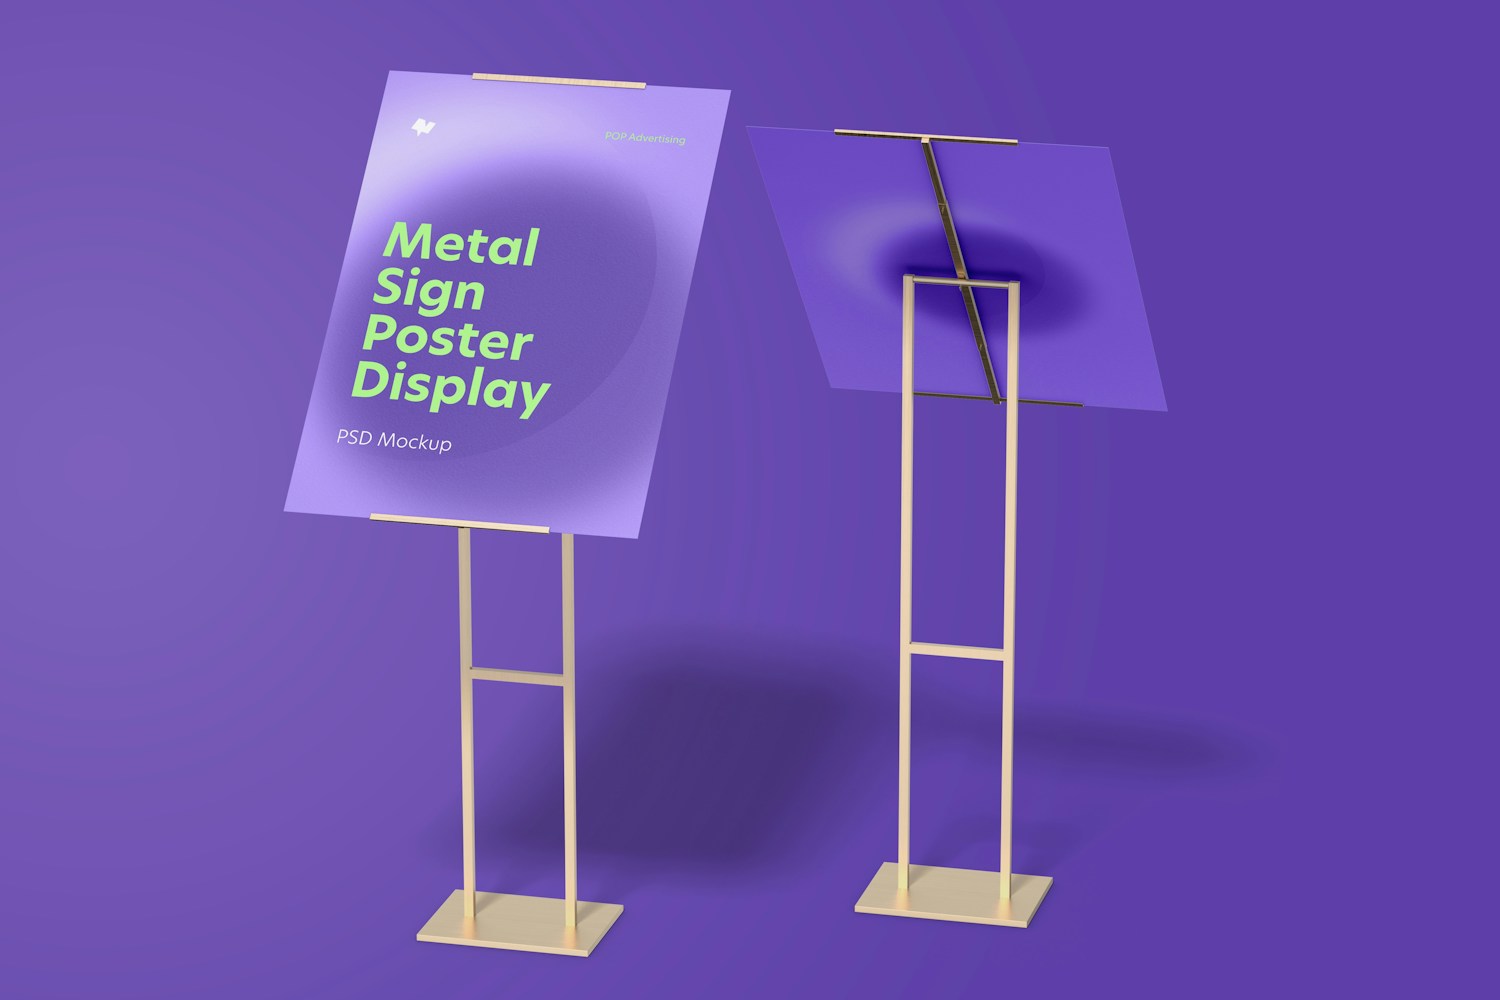 Maqueta de Rompetráficos Metálicos para Poster, Vista Frontal y Posterior